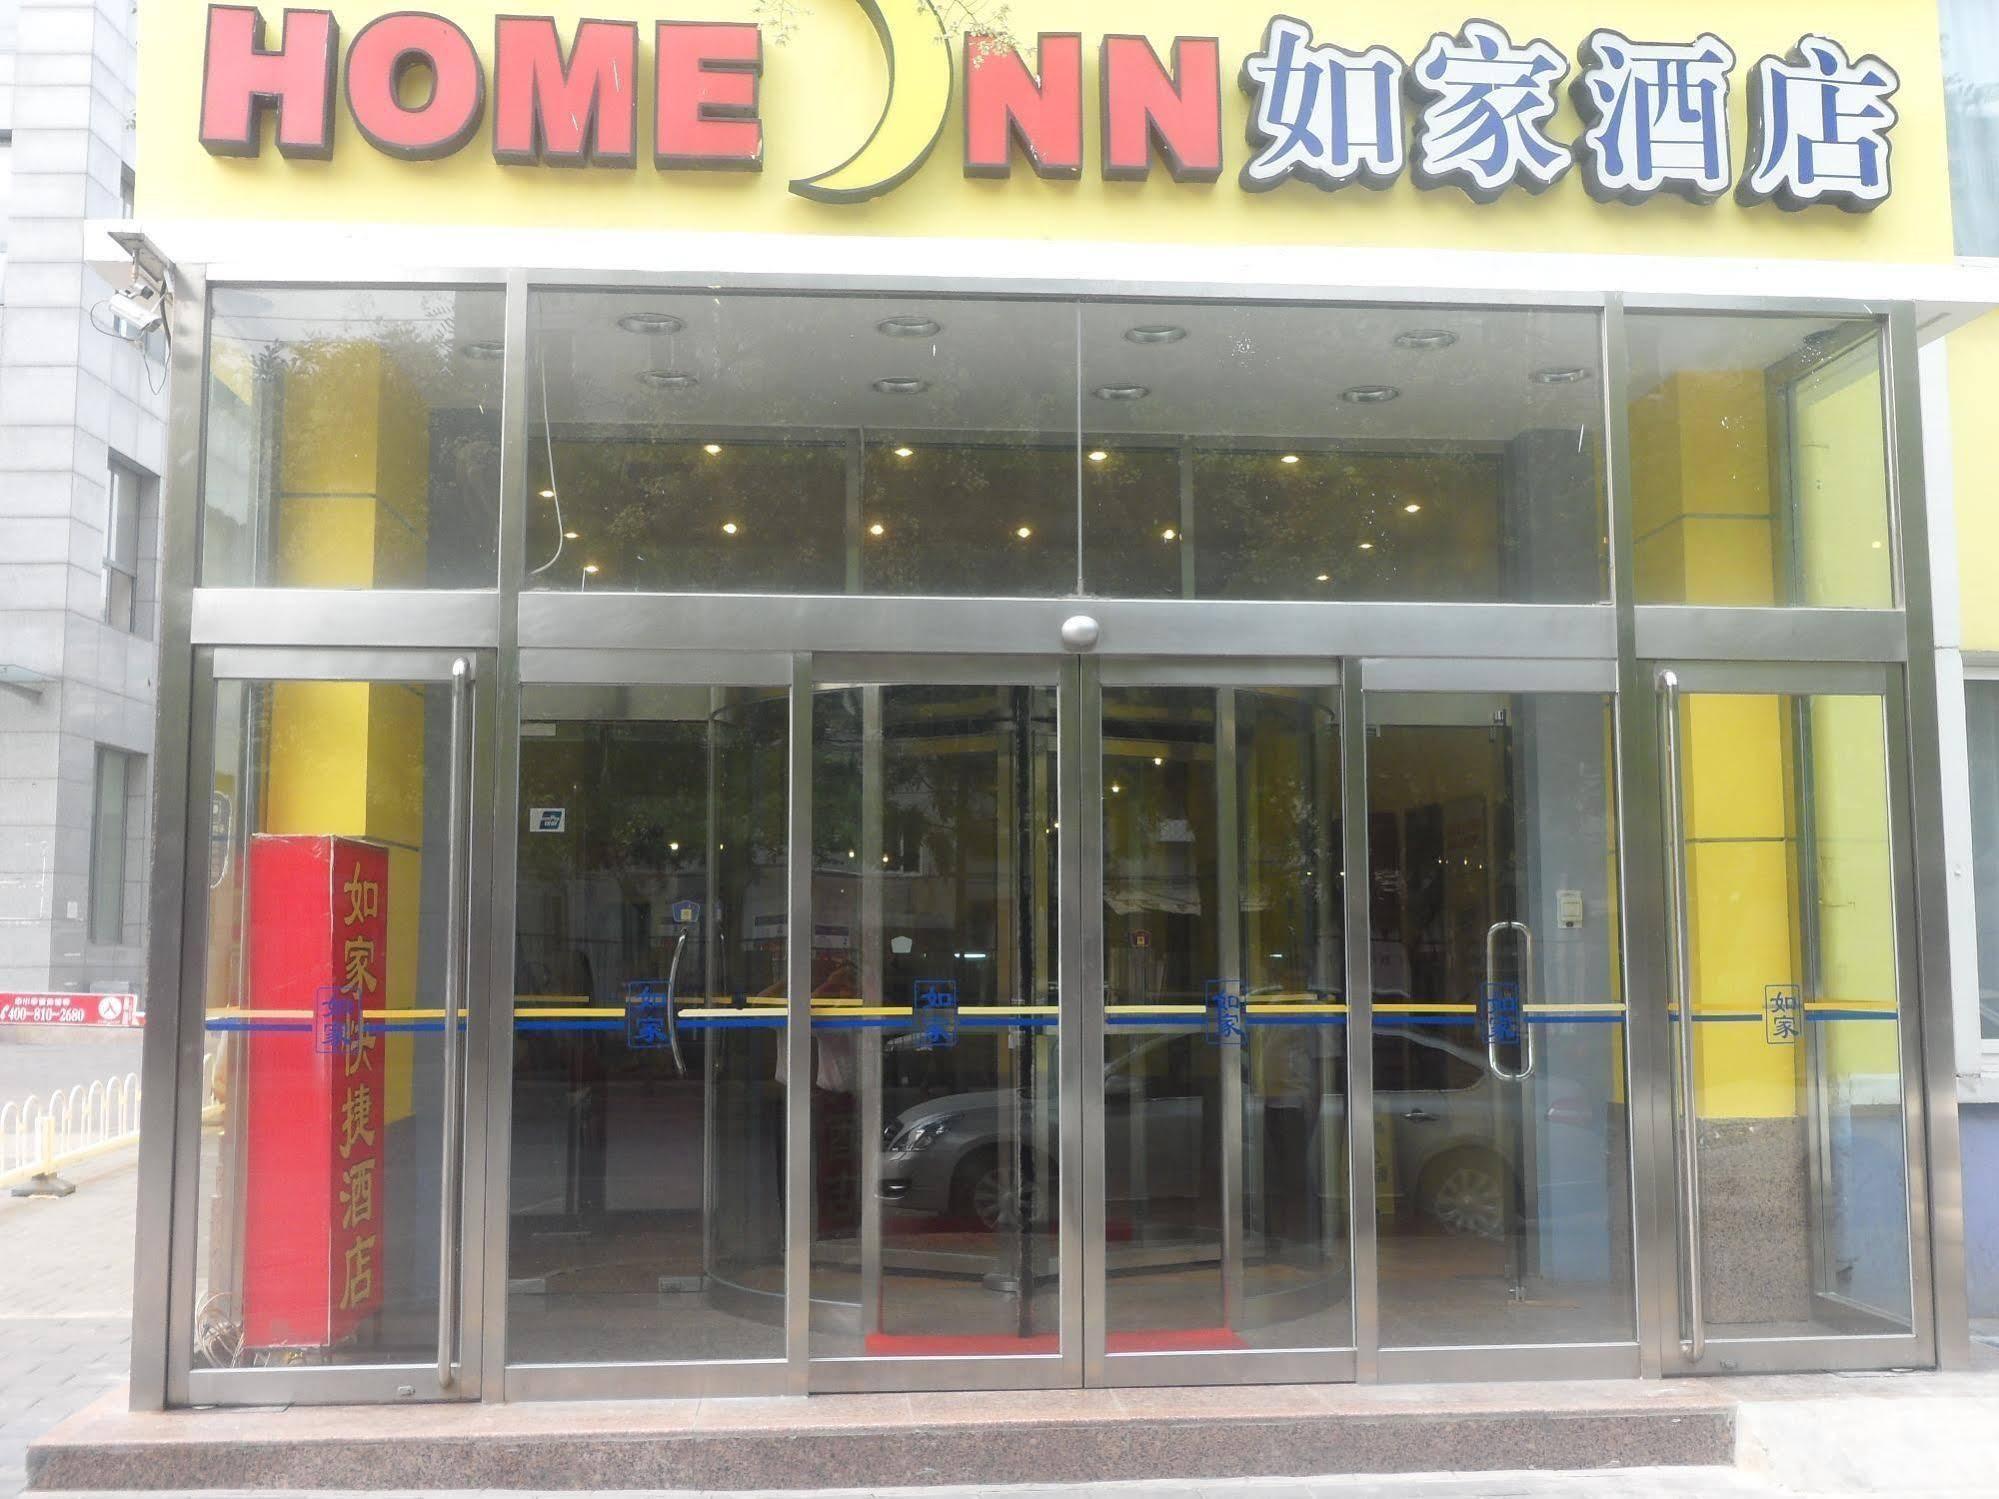 Home Inn Zuojiazhuang